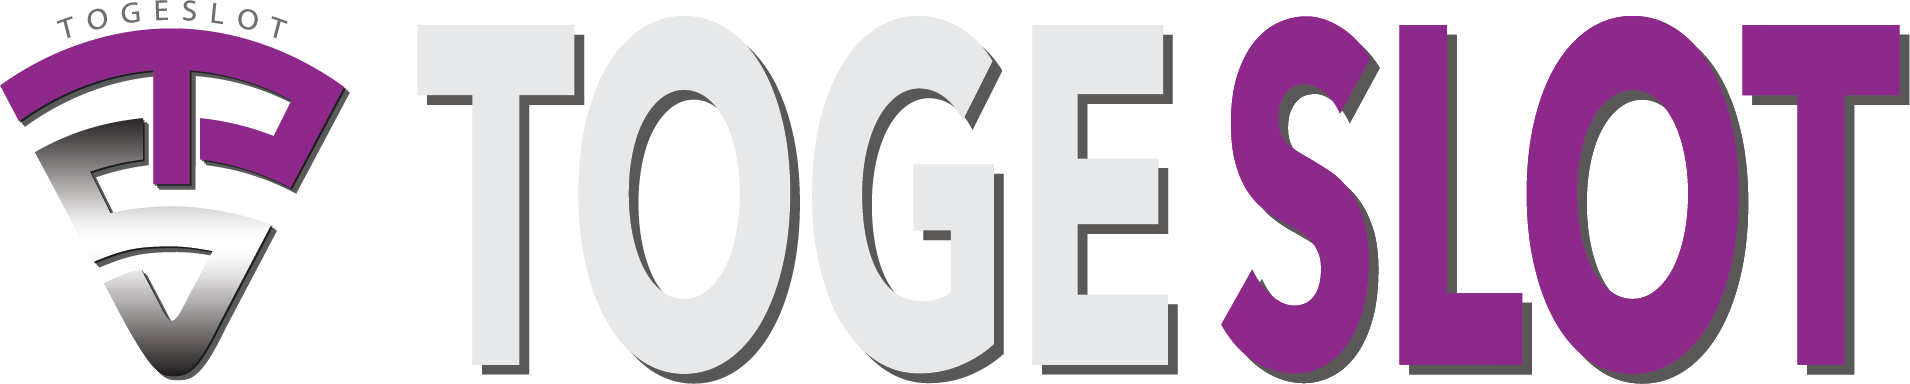 TOGESLOT logo